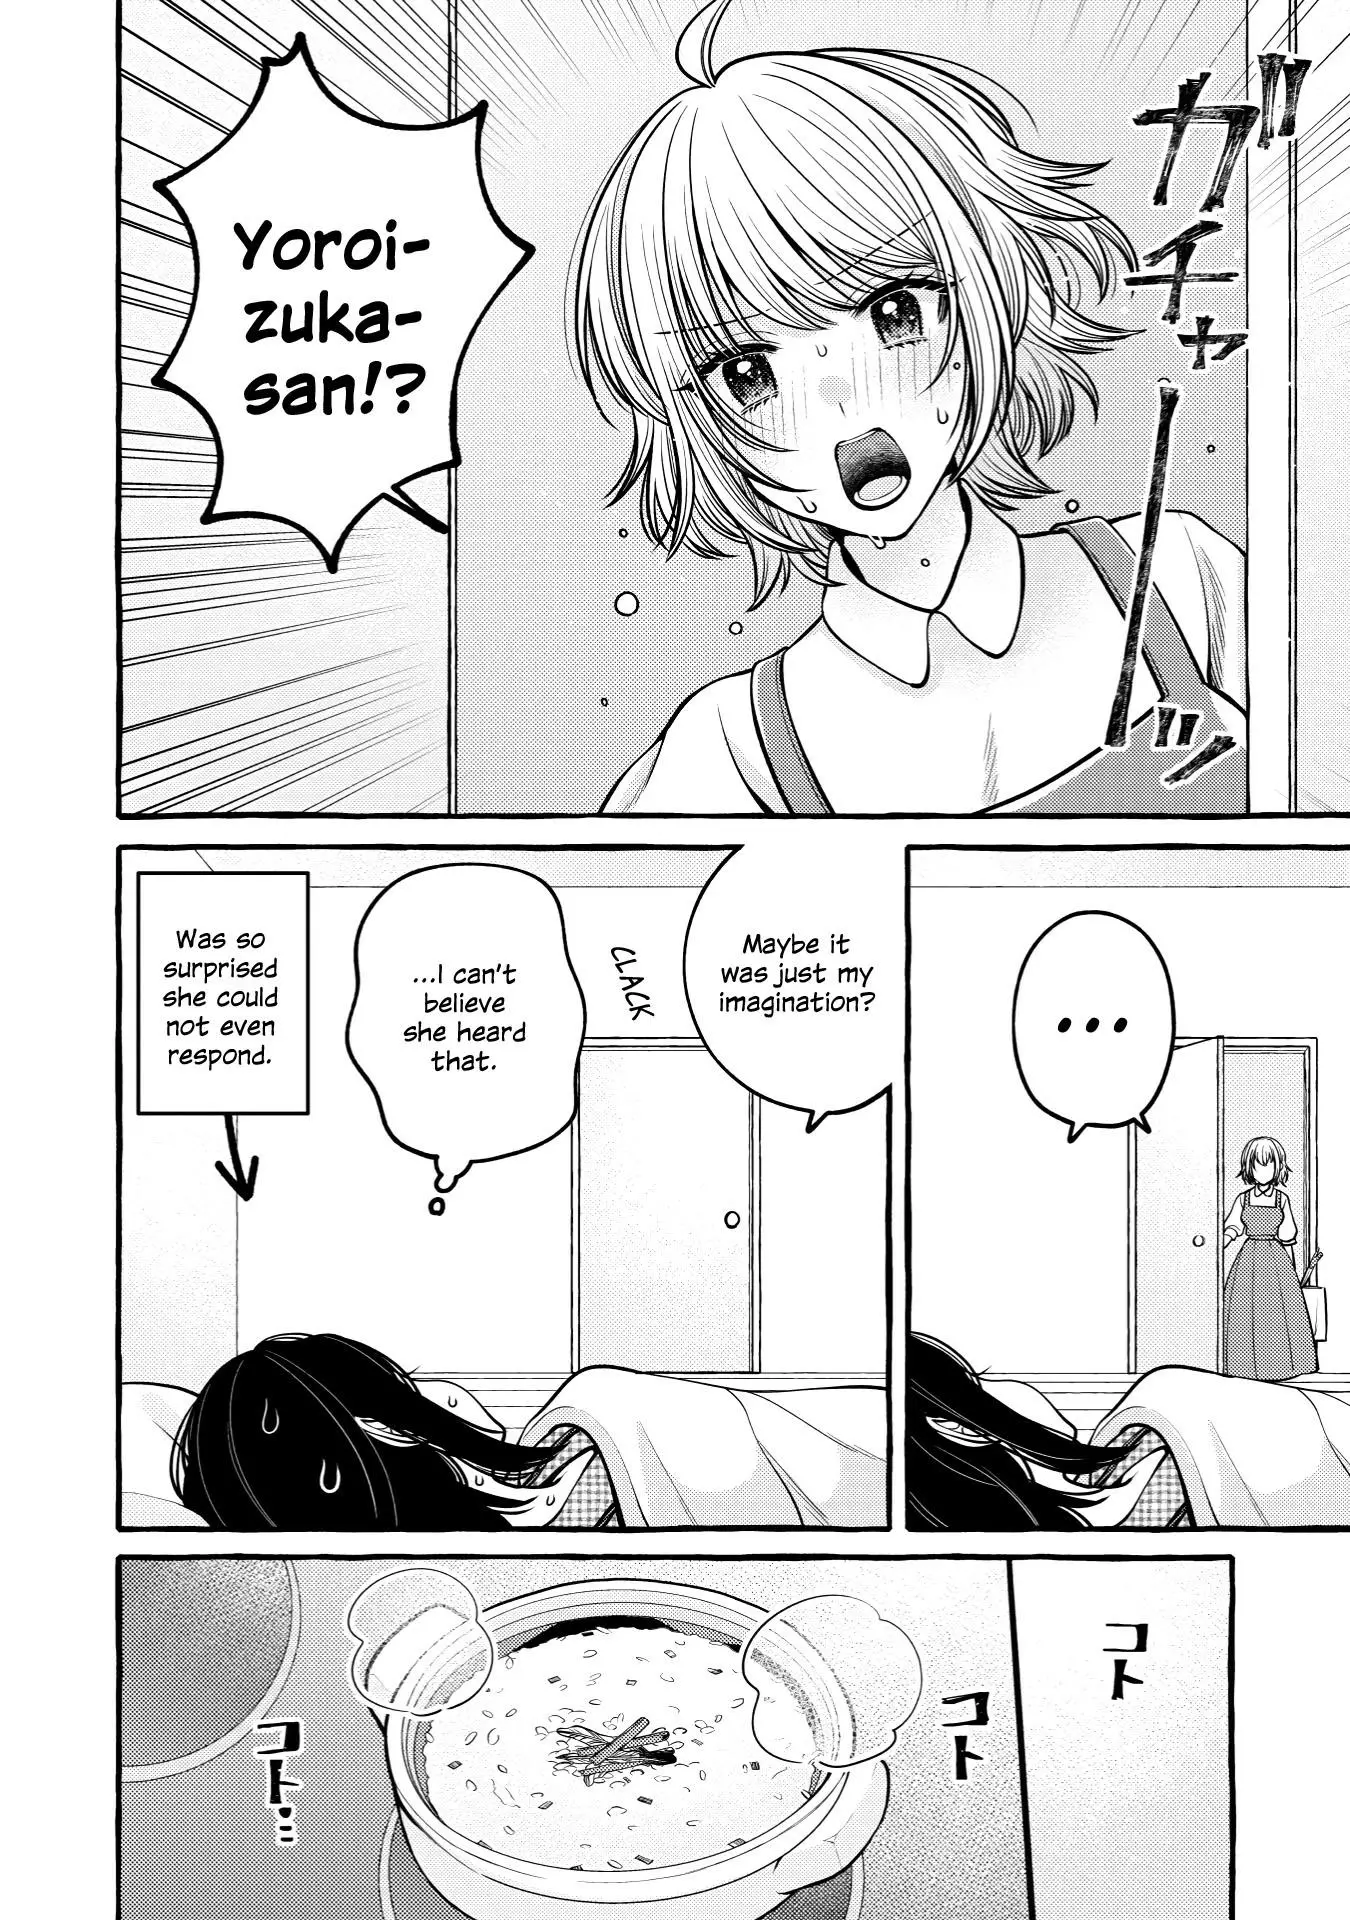 Yoroizuka-San Wo Baburasetai - 15 page 7-23fea79e